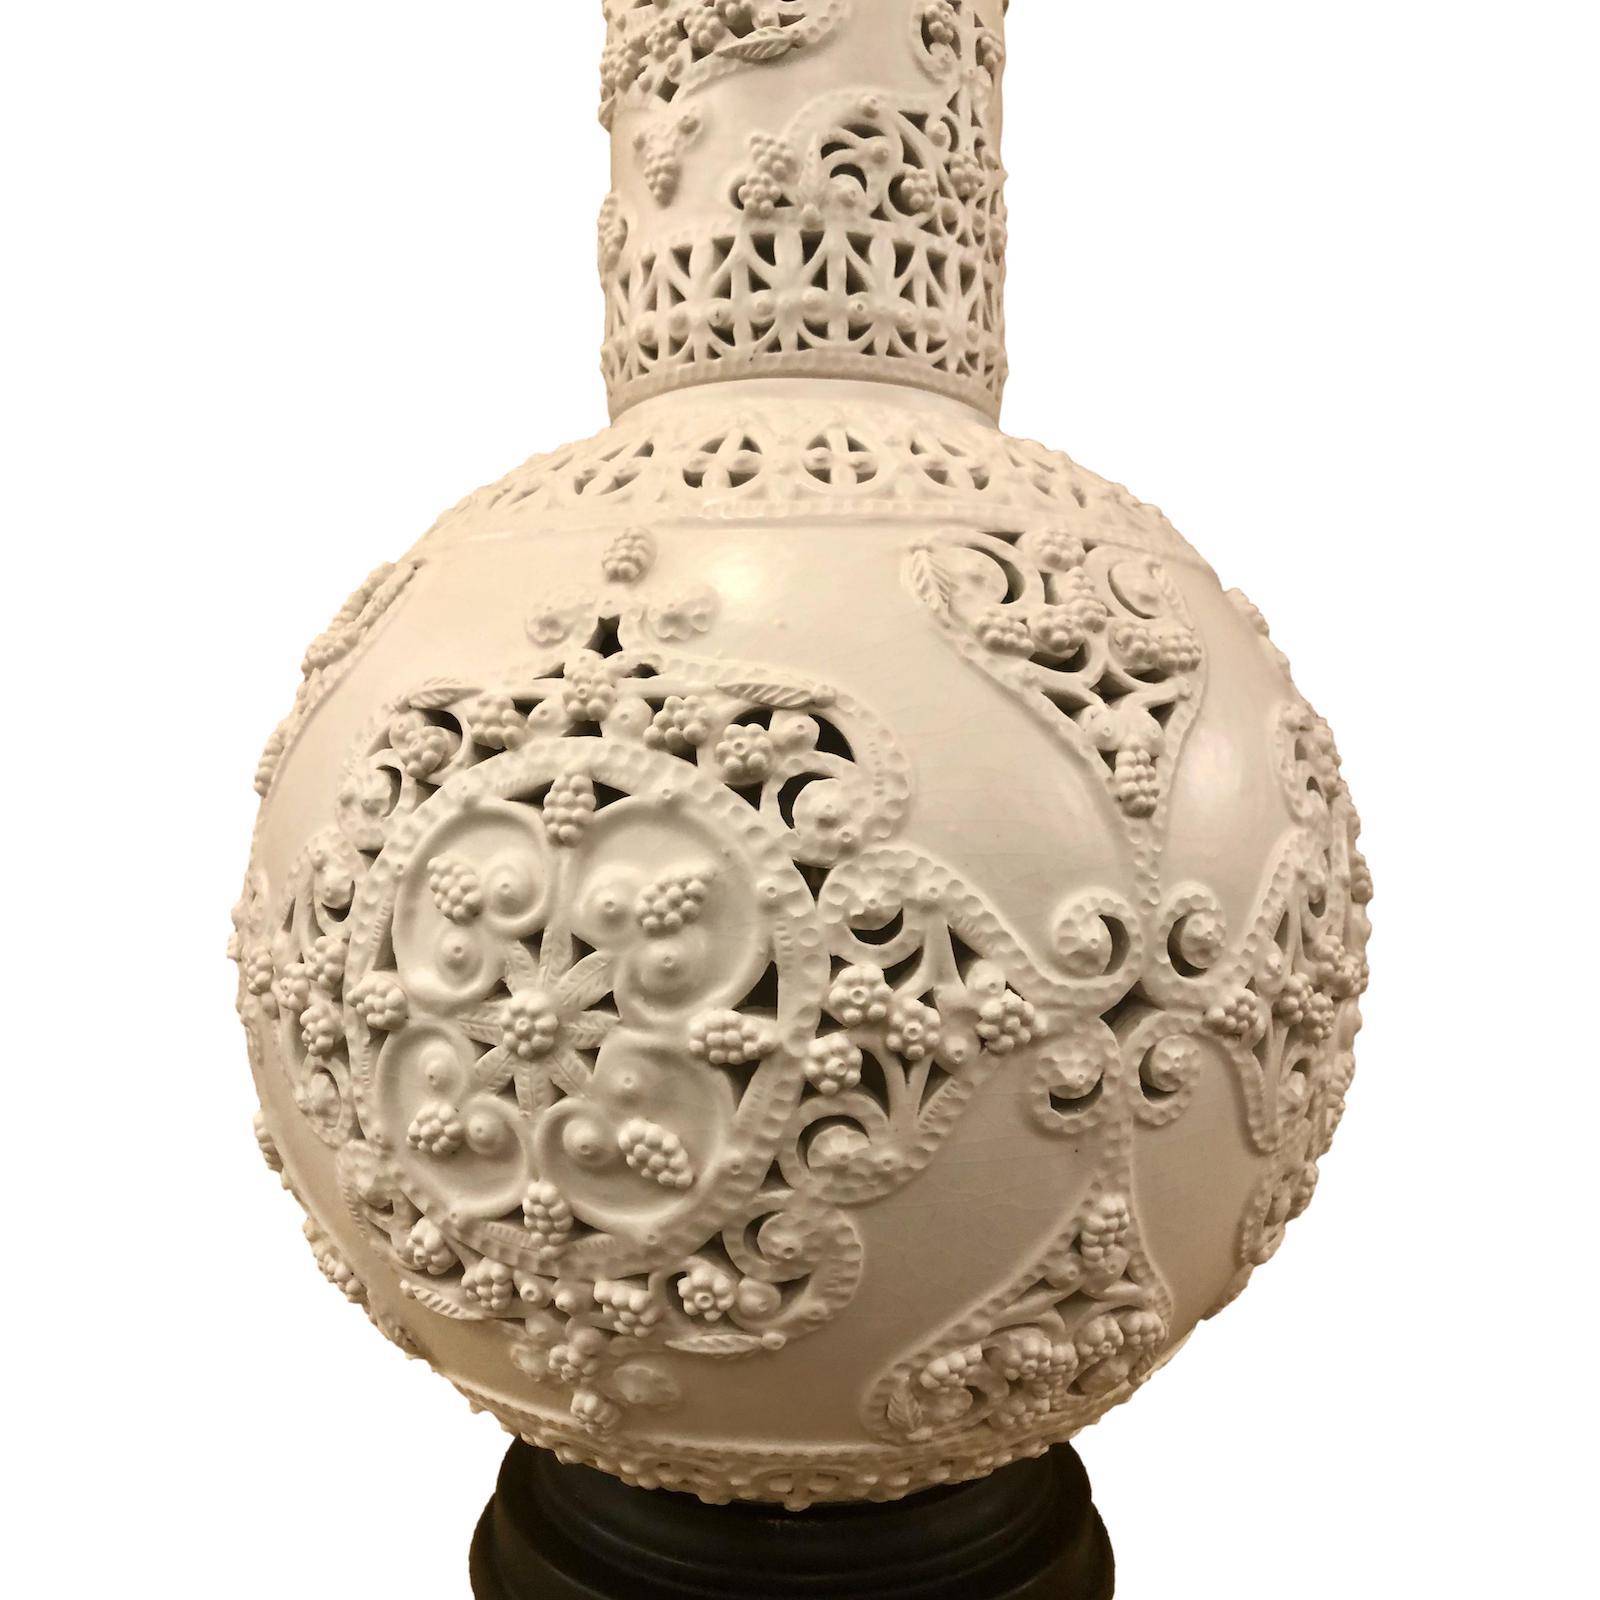 Eine italienische Tischlampe aus Porzellan im Arabeskenstil aus der Mitte des Jahrhunderts.

Abmessungen:
Höhe des Körpers: 30